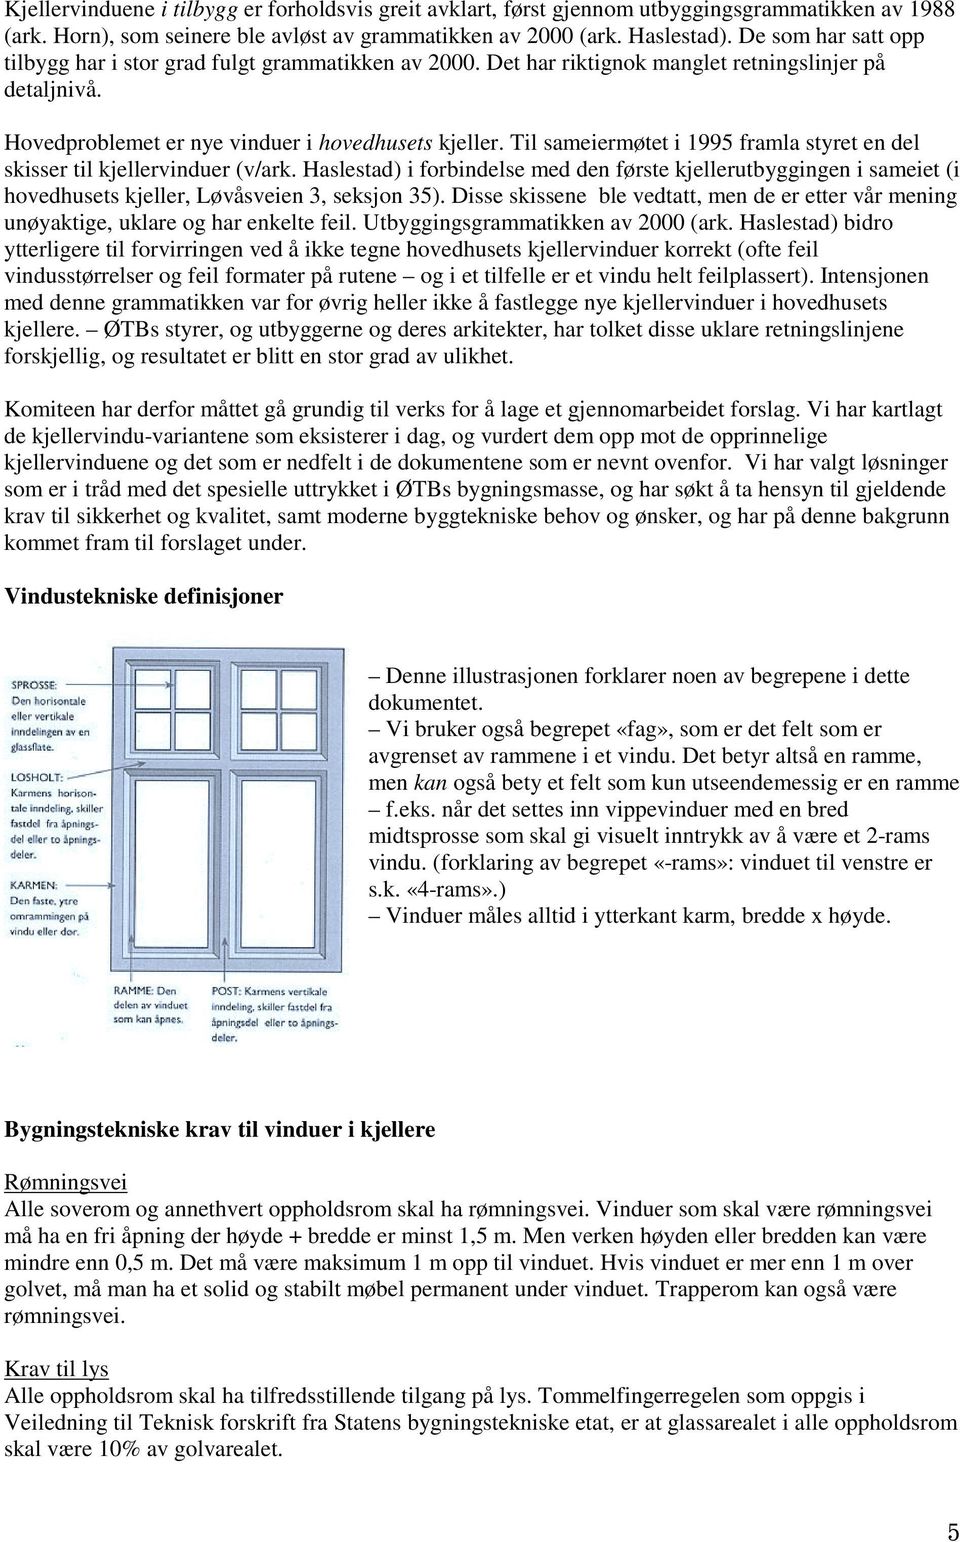 Til sameiermøtet i 1995 framla styret en del skisser til kjellervinduer (v/ark. Haslestad) i forbindelse med den første kjellerutbyggingen i sameiet (i hovedhusets kjeller, Løvåsveien 3, seksjon 35).